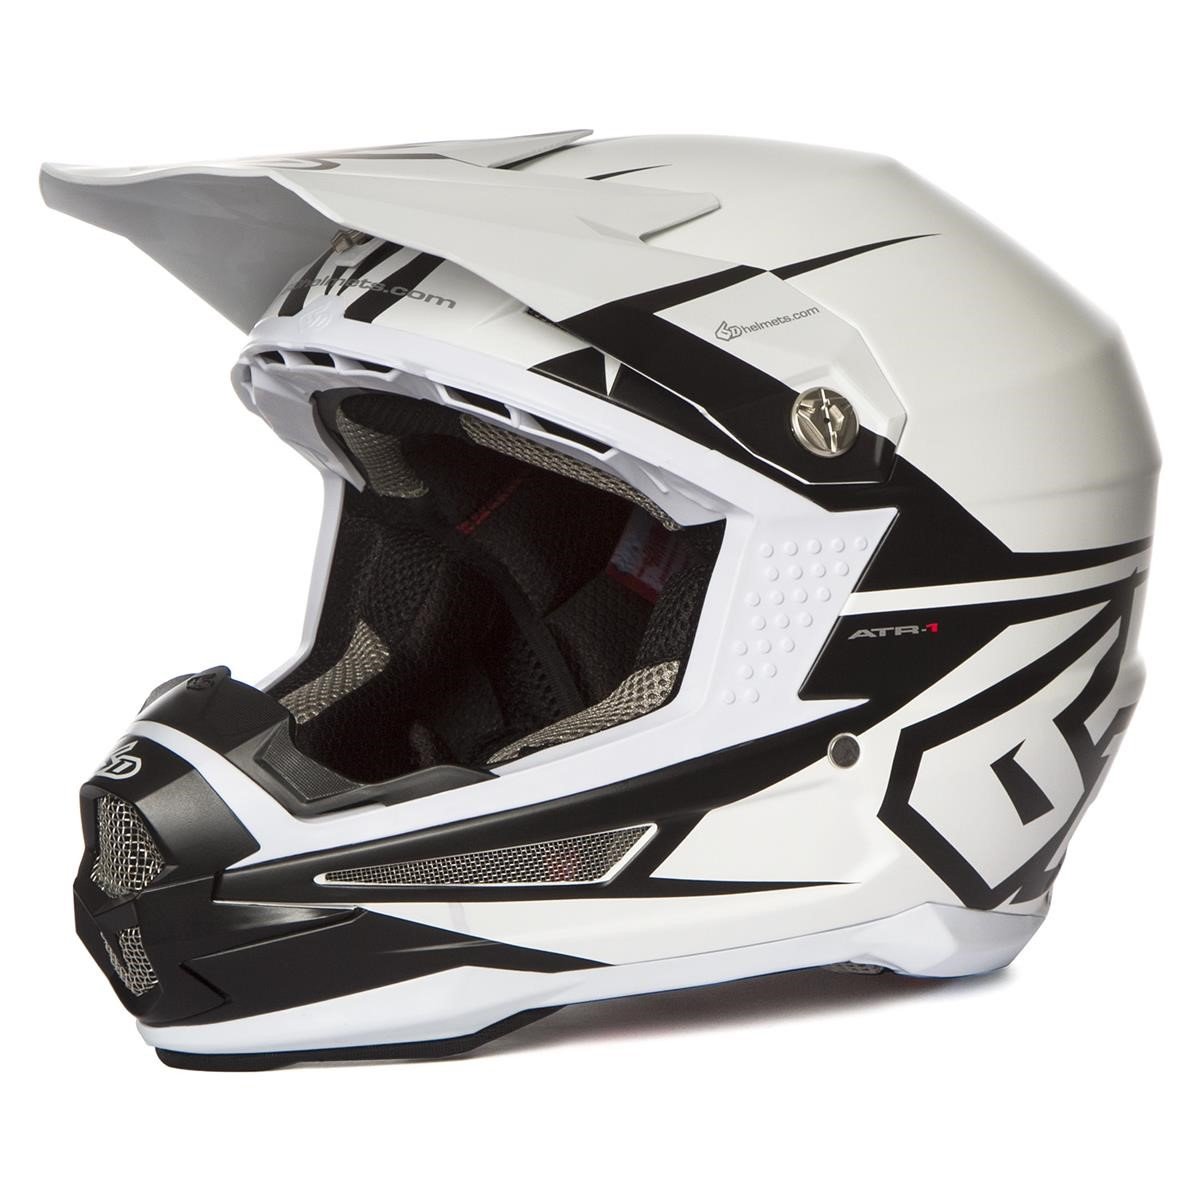 6D Motocross-Helm ATR-1 S2 - Matt Weiß